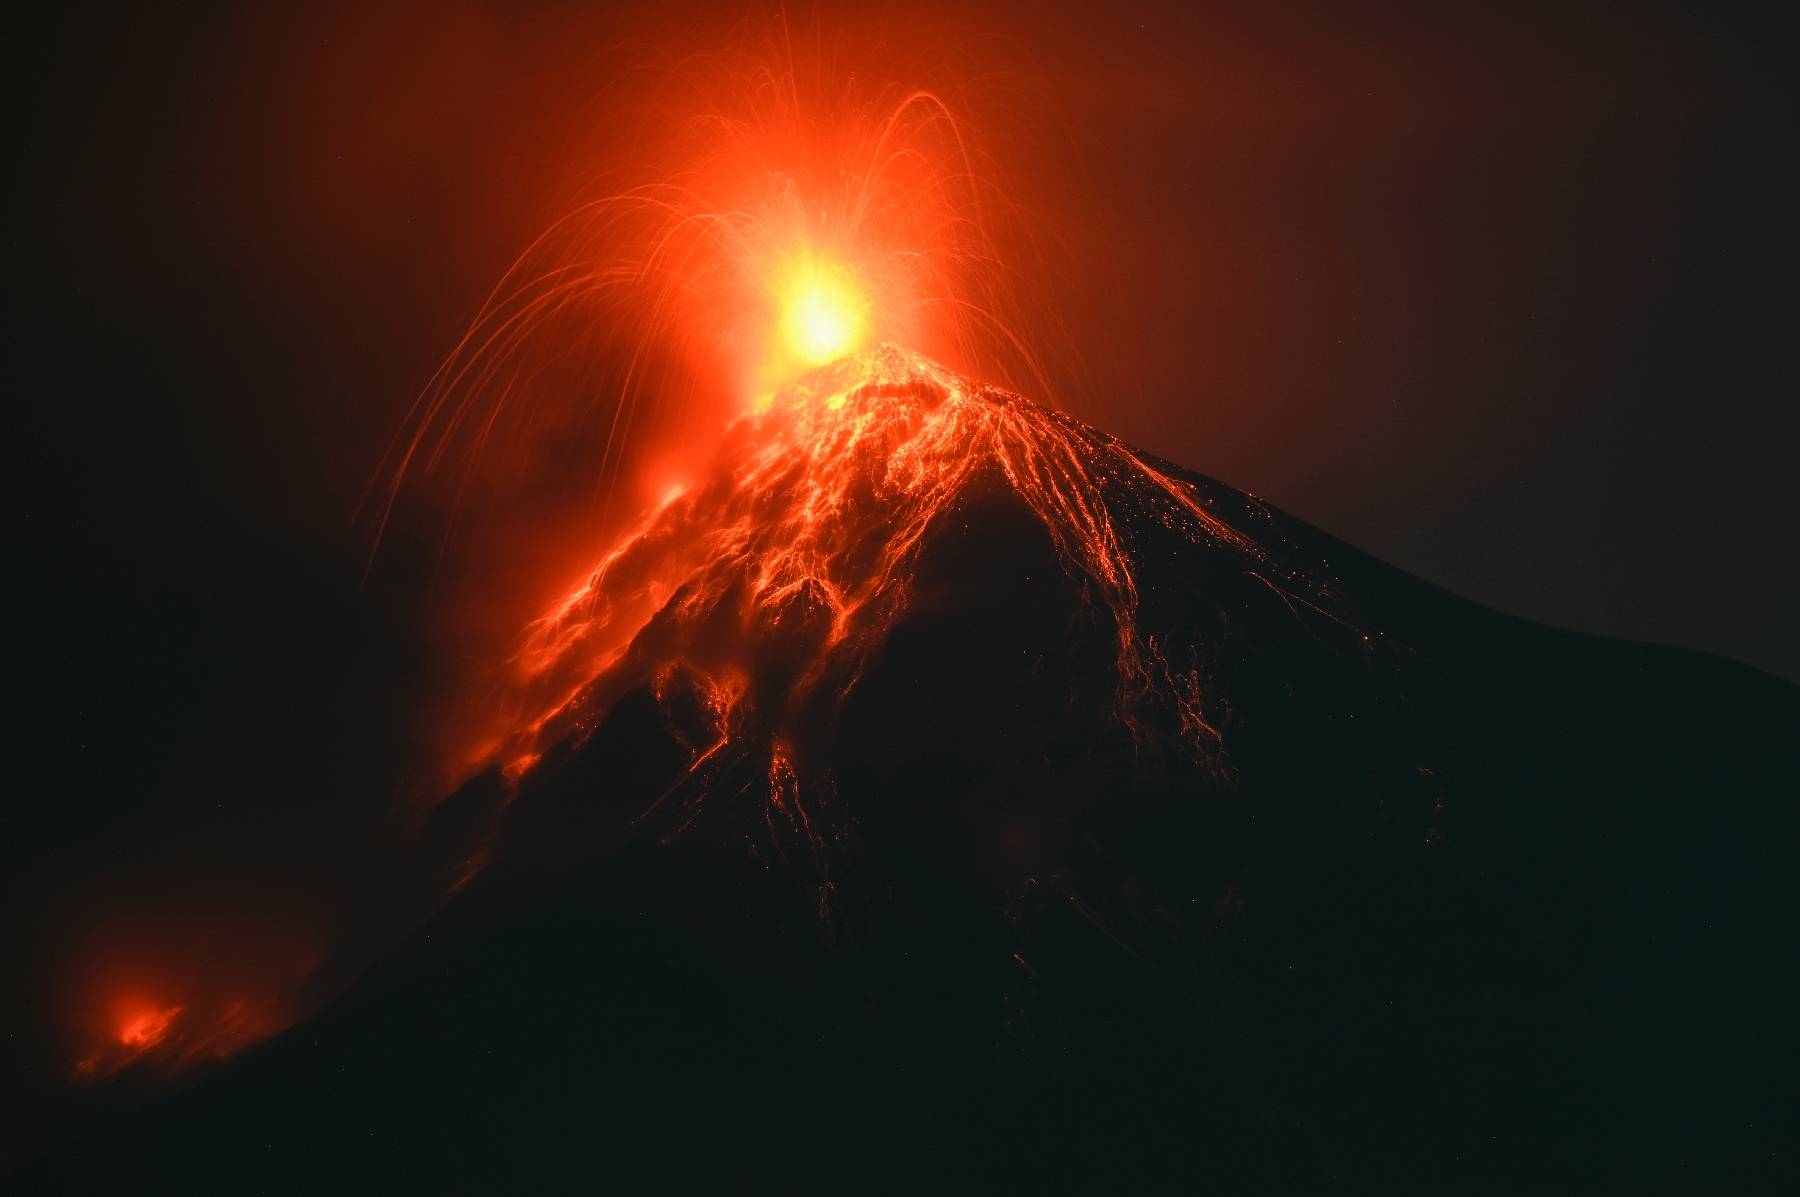 Eruption du Volcan de Fuego au Guatemala, le principal aéroport fermé quelques heures